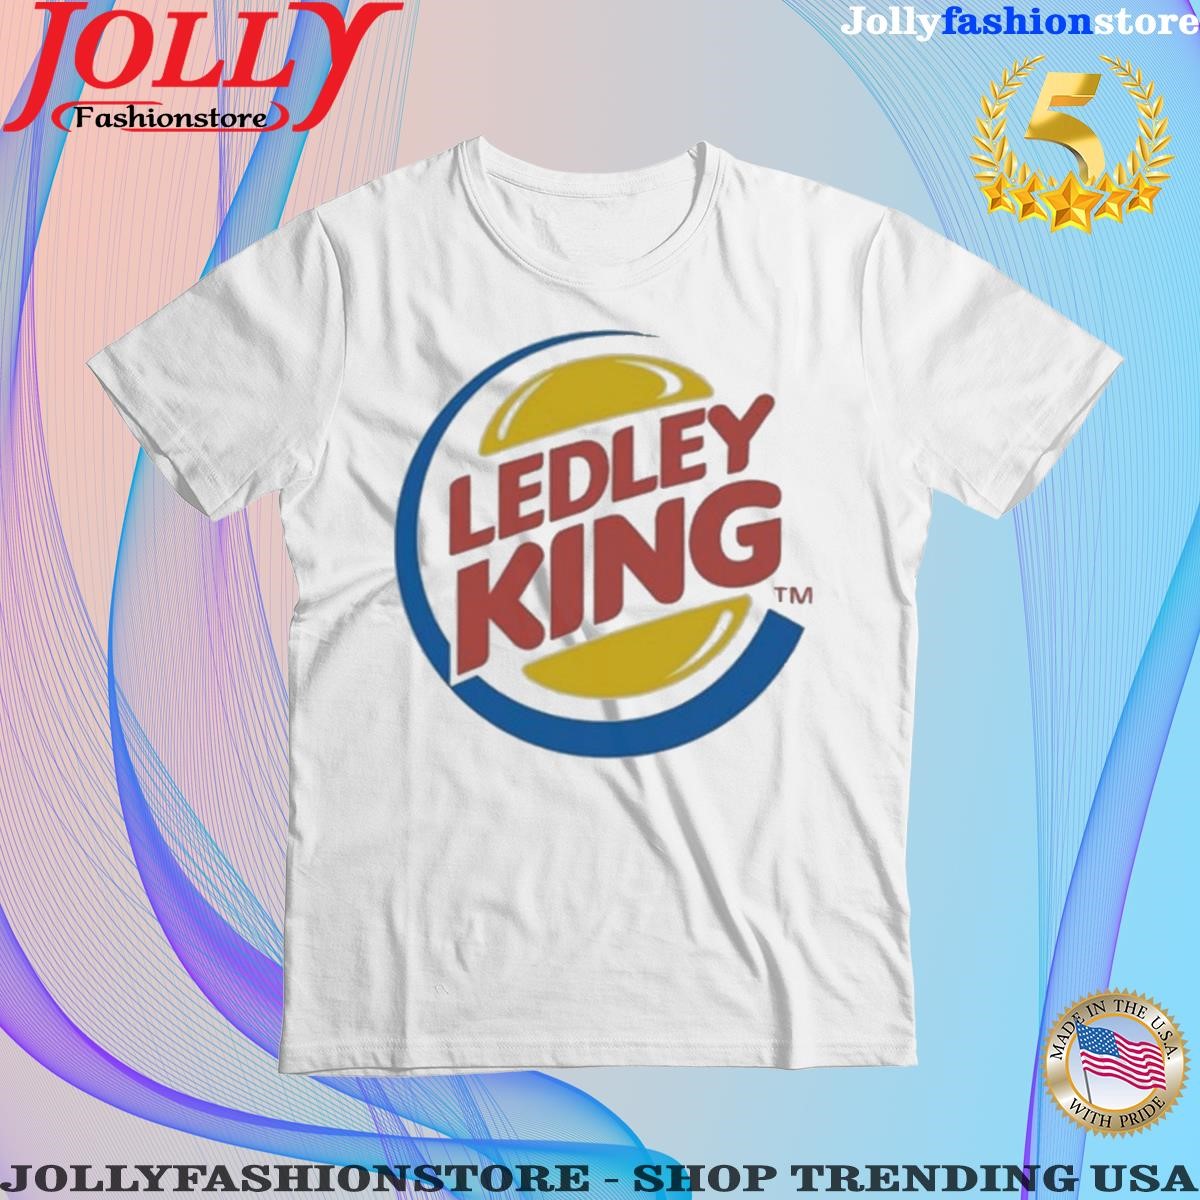 Trending coys News Ledley King T Shirt